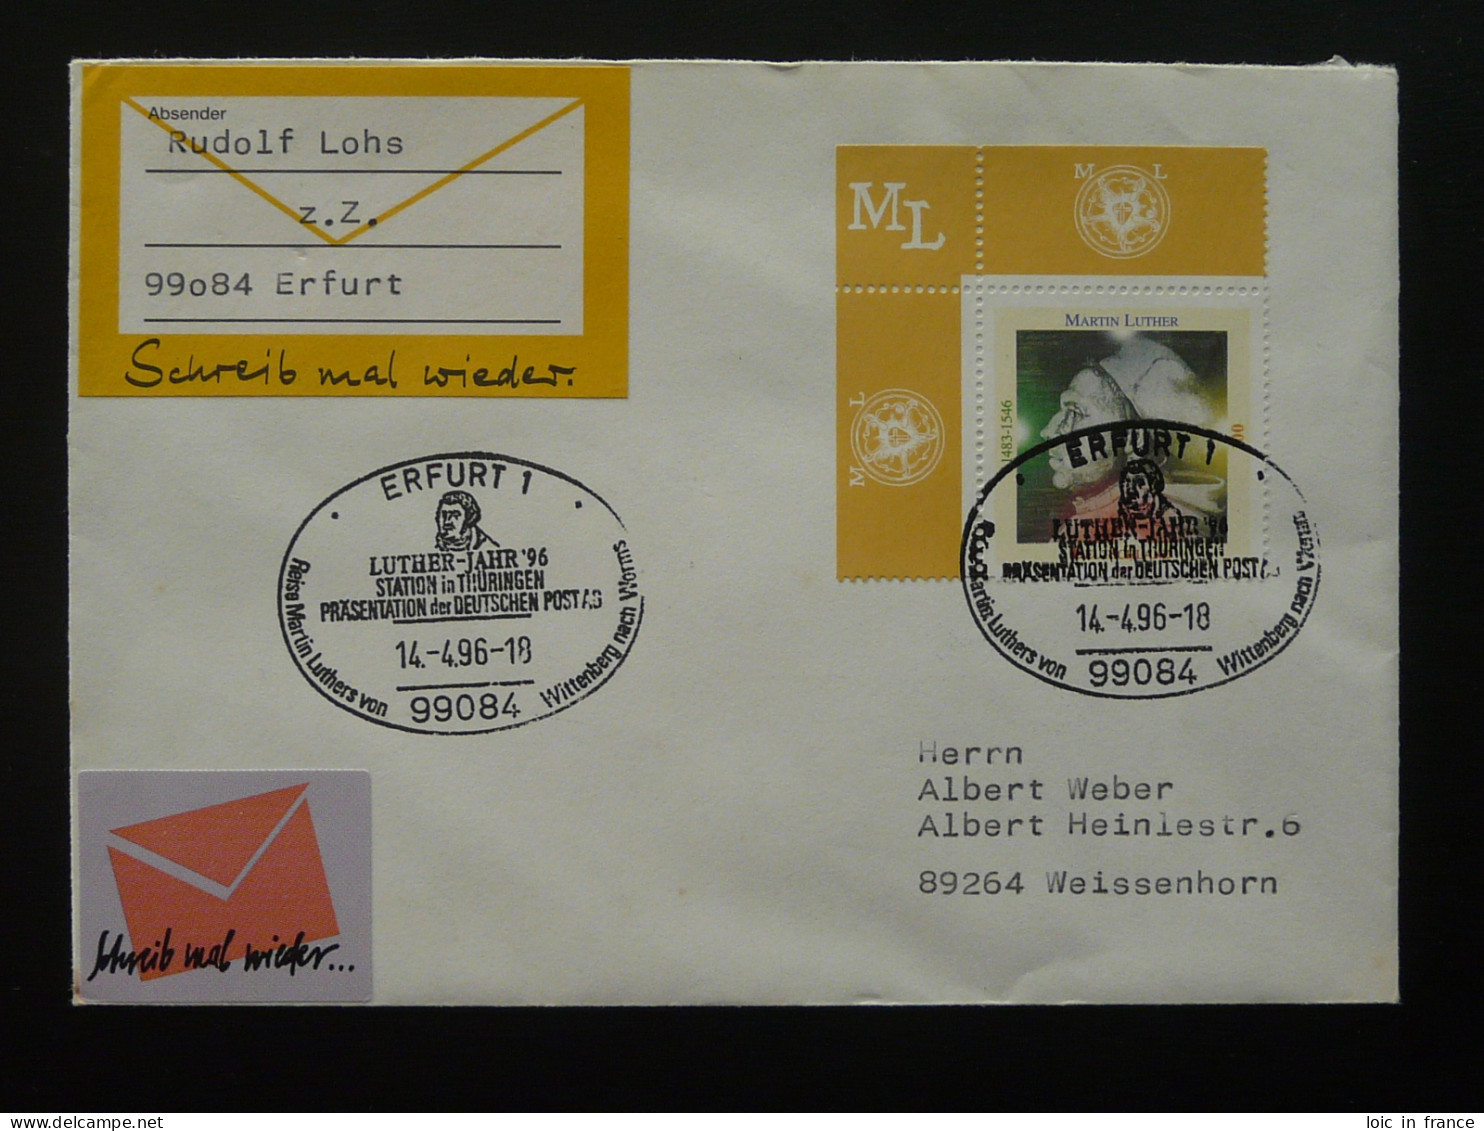 Martin Luther Oblitération Sur Lettre Postmark On Cover Erfurt Allemagne Germany 1996 - Theologen